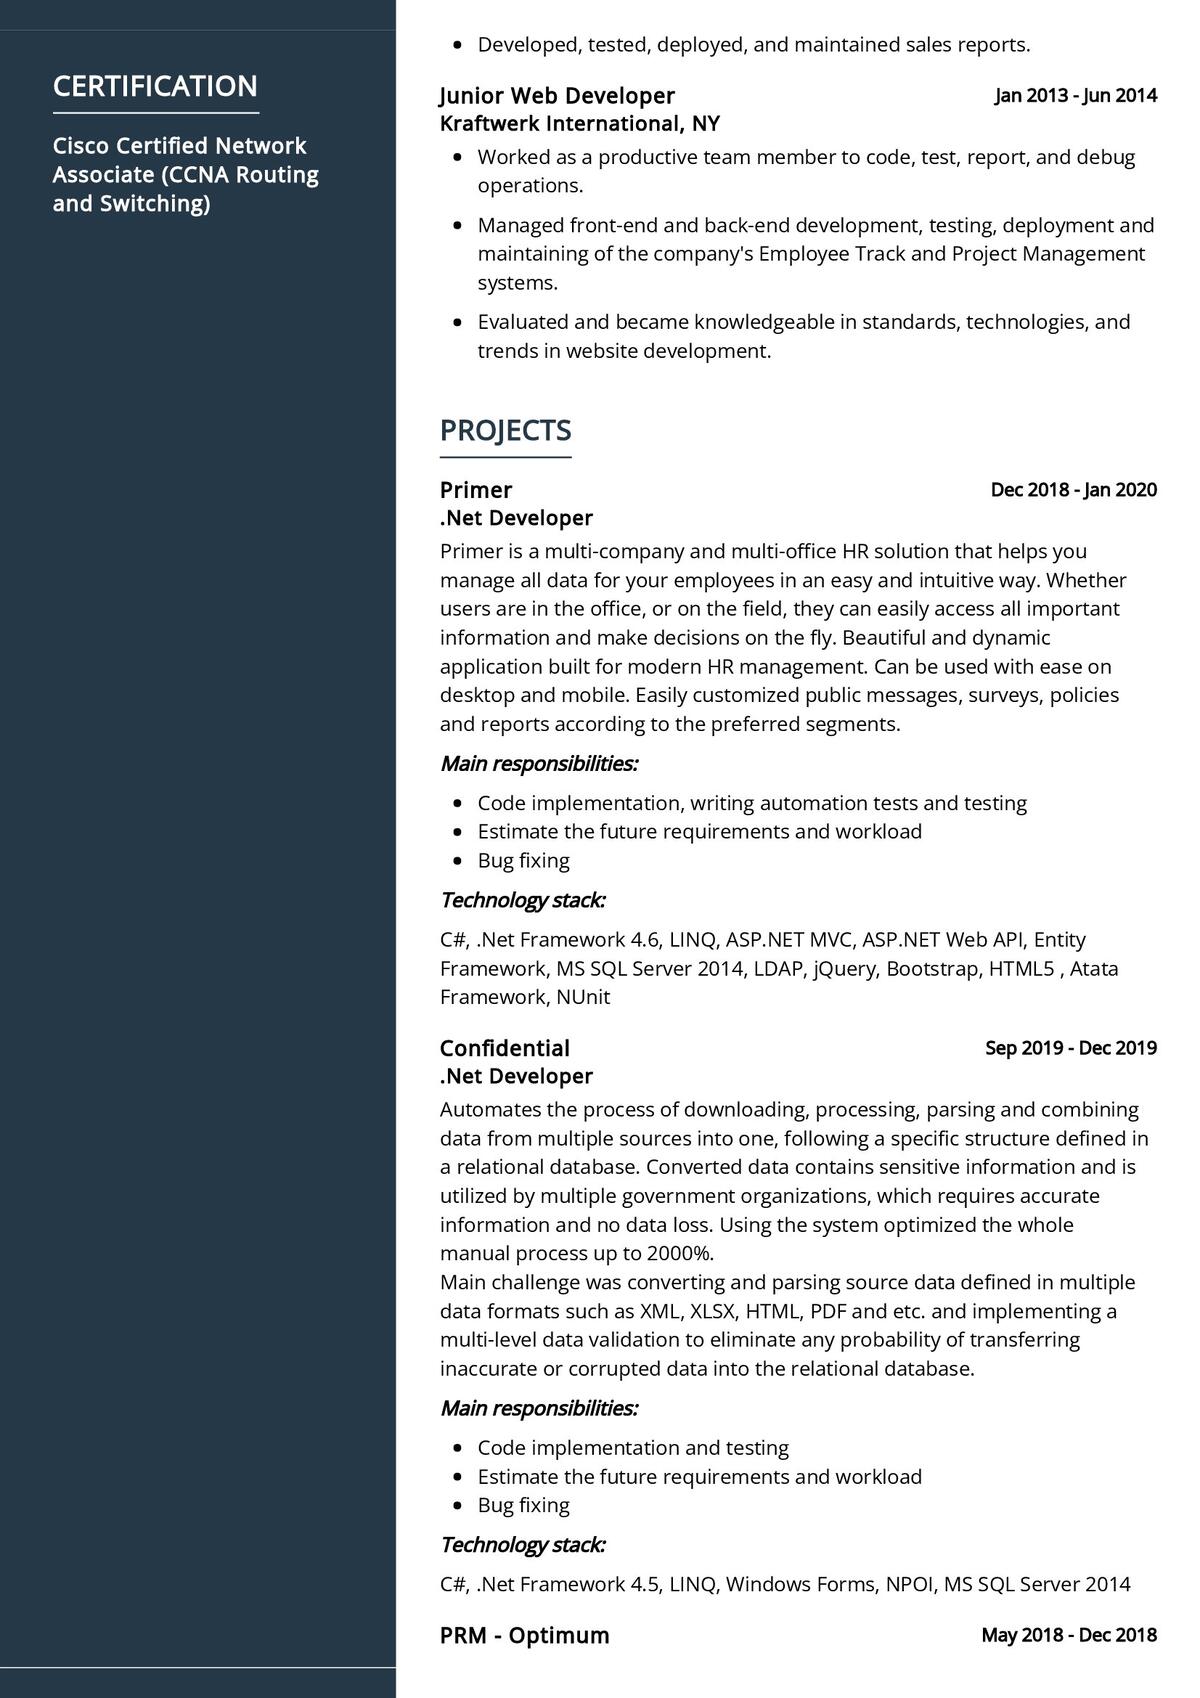 sample resume for dot net developer experience 10 years